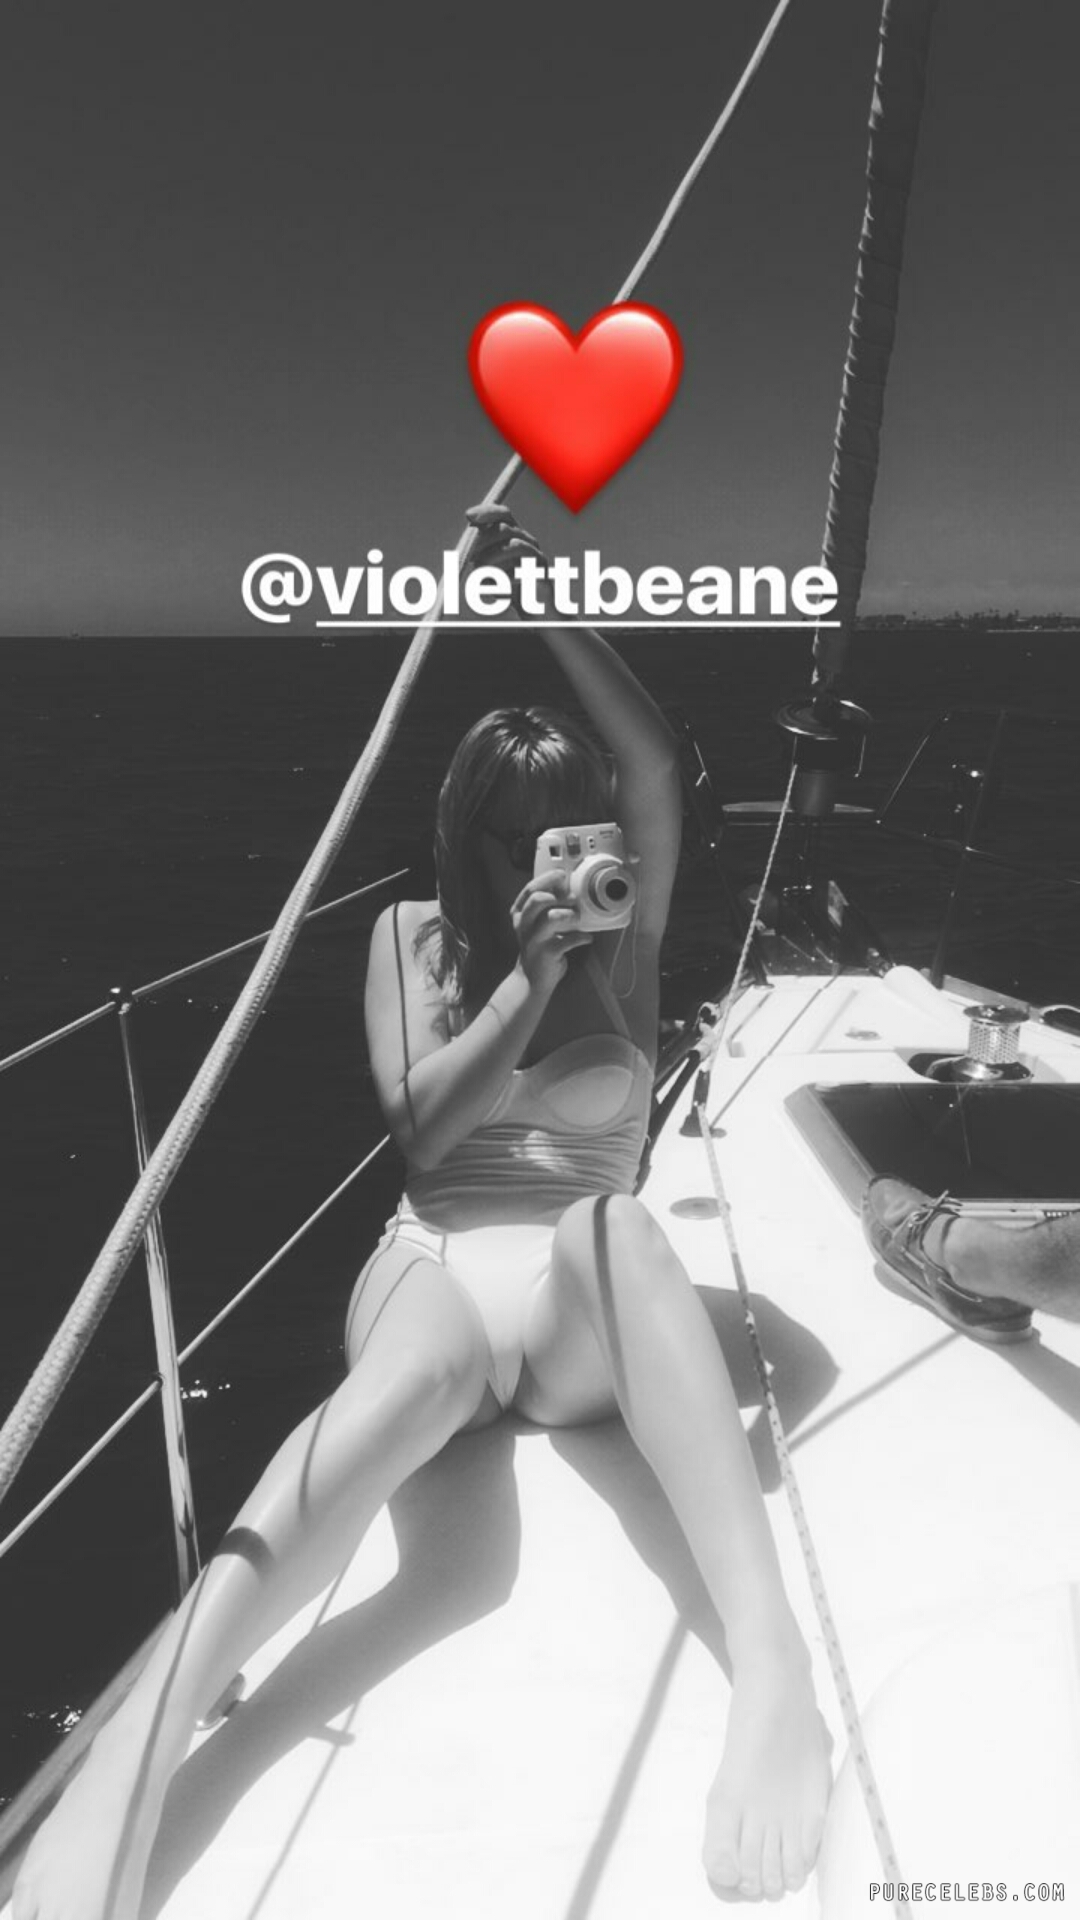 Violett beane tits